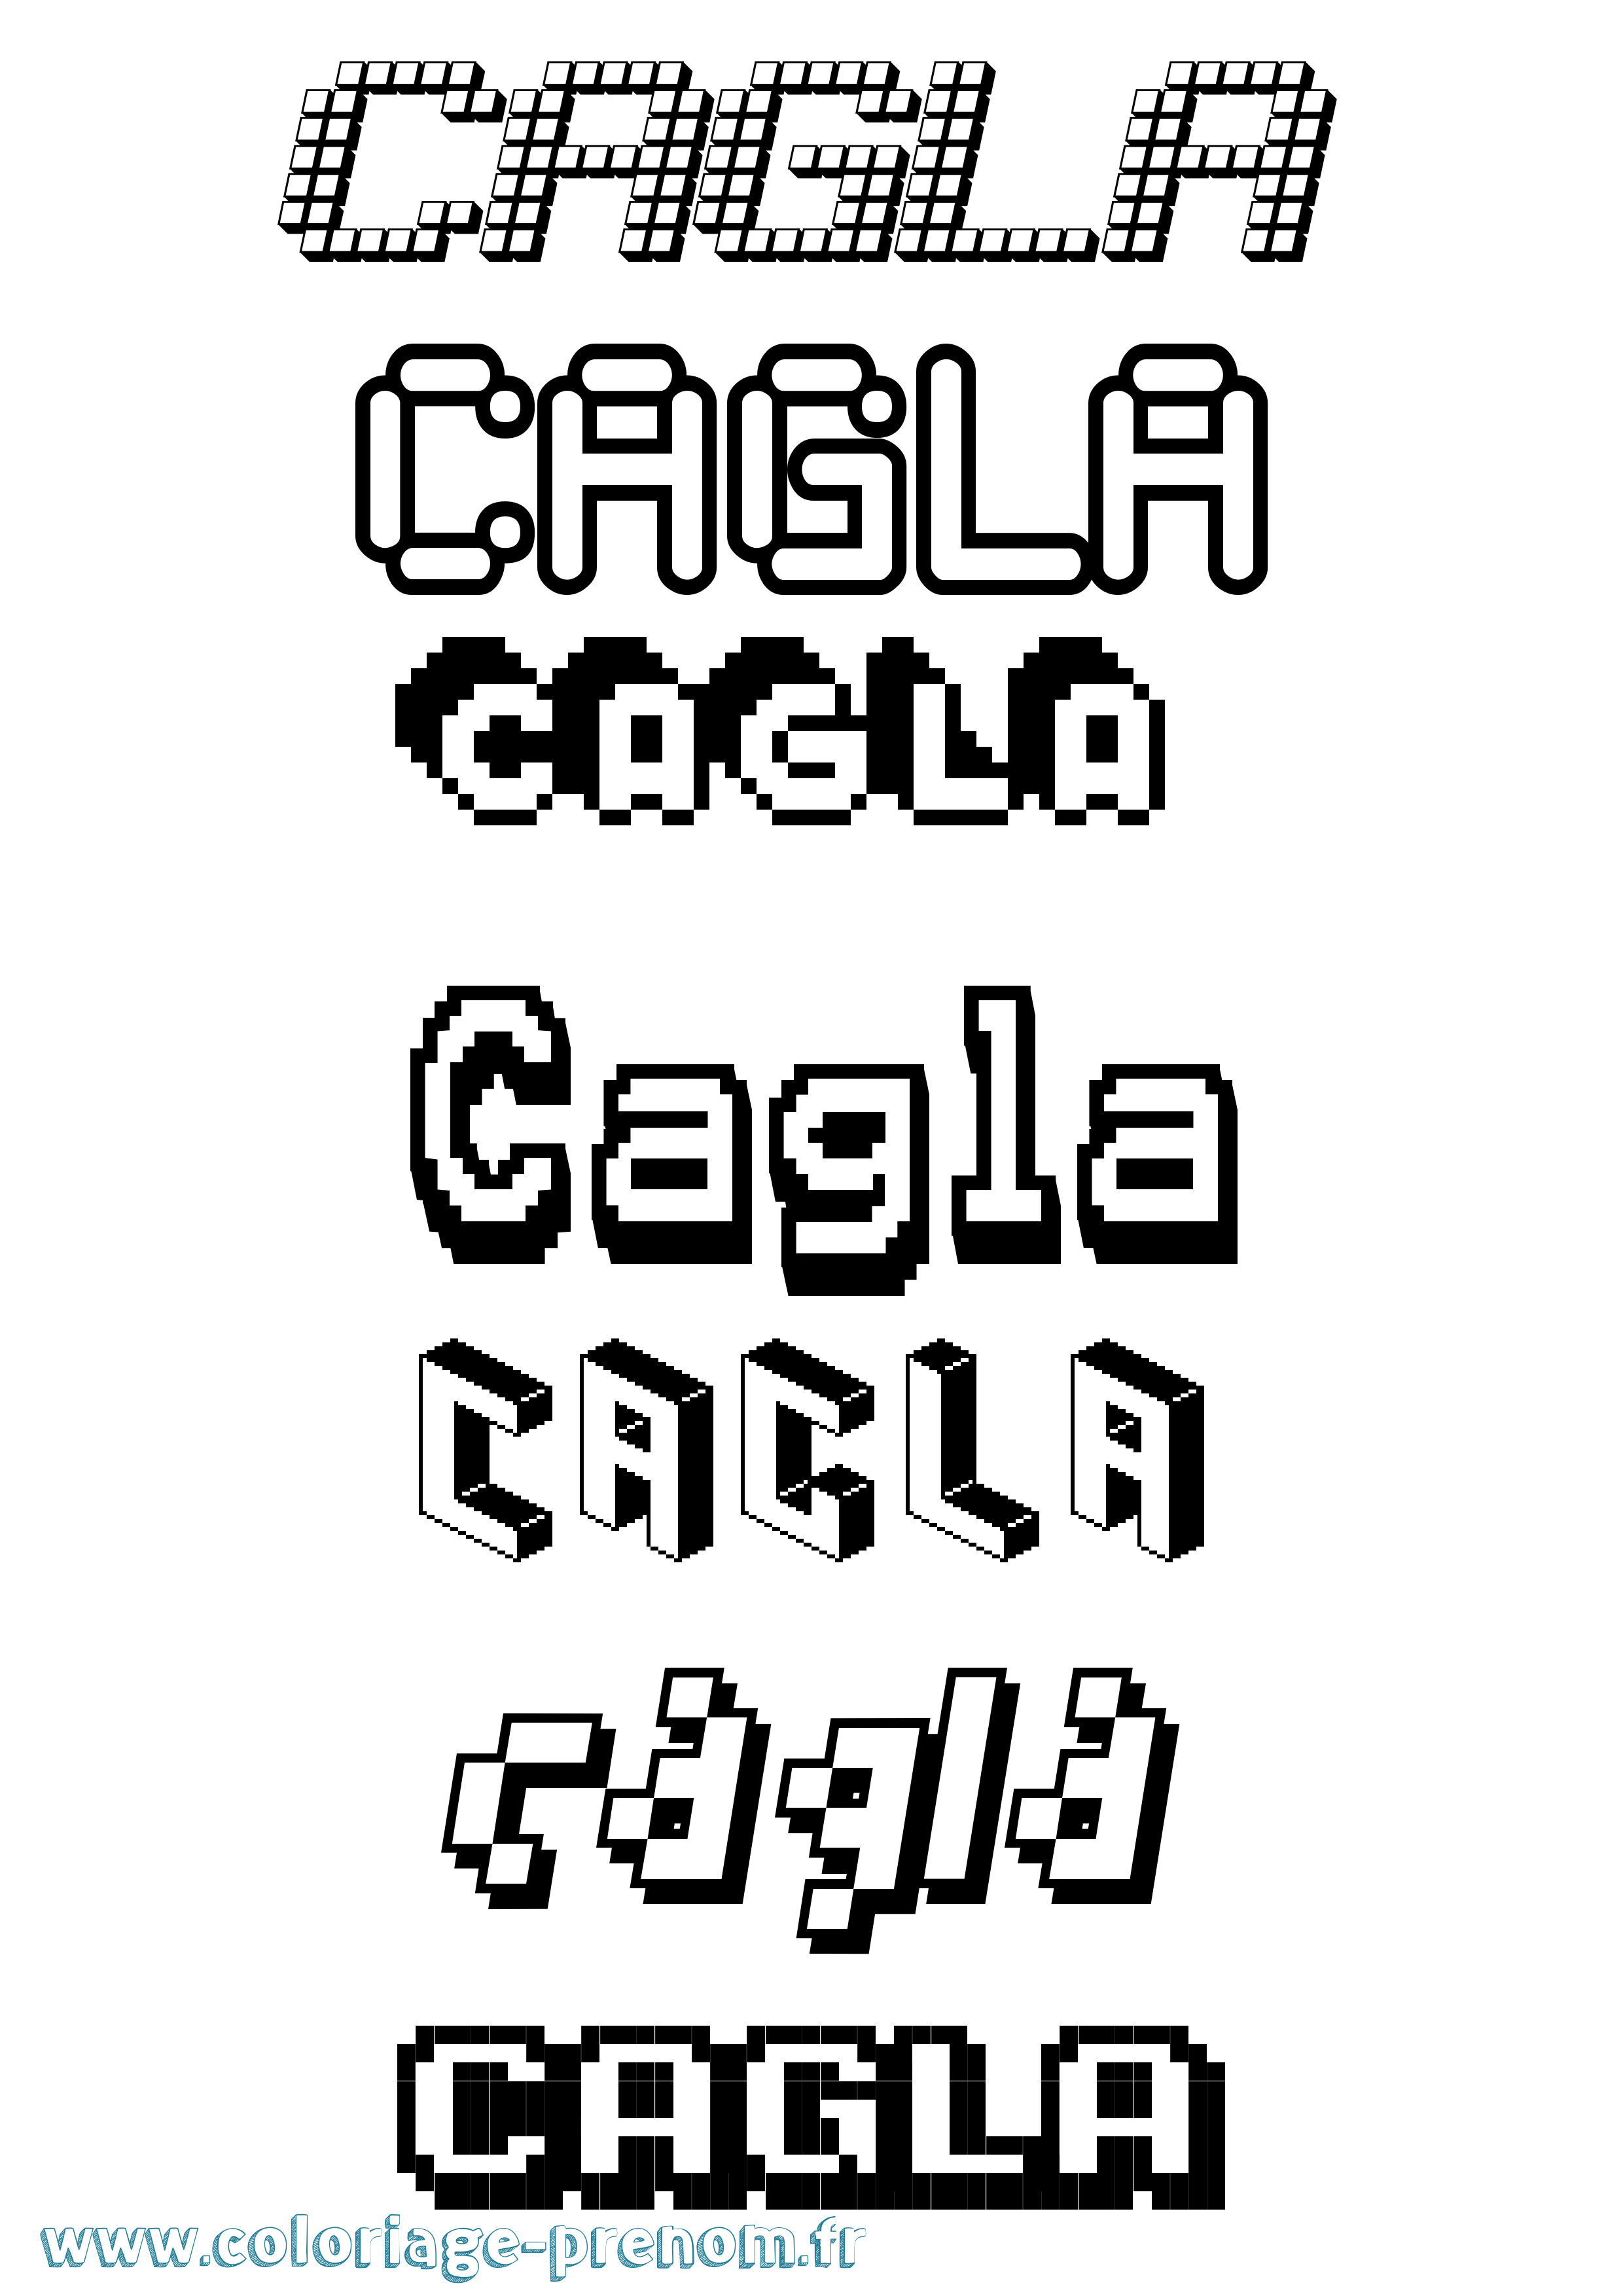 Coloriage prénom Cagla Pixel